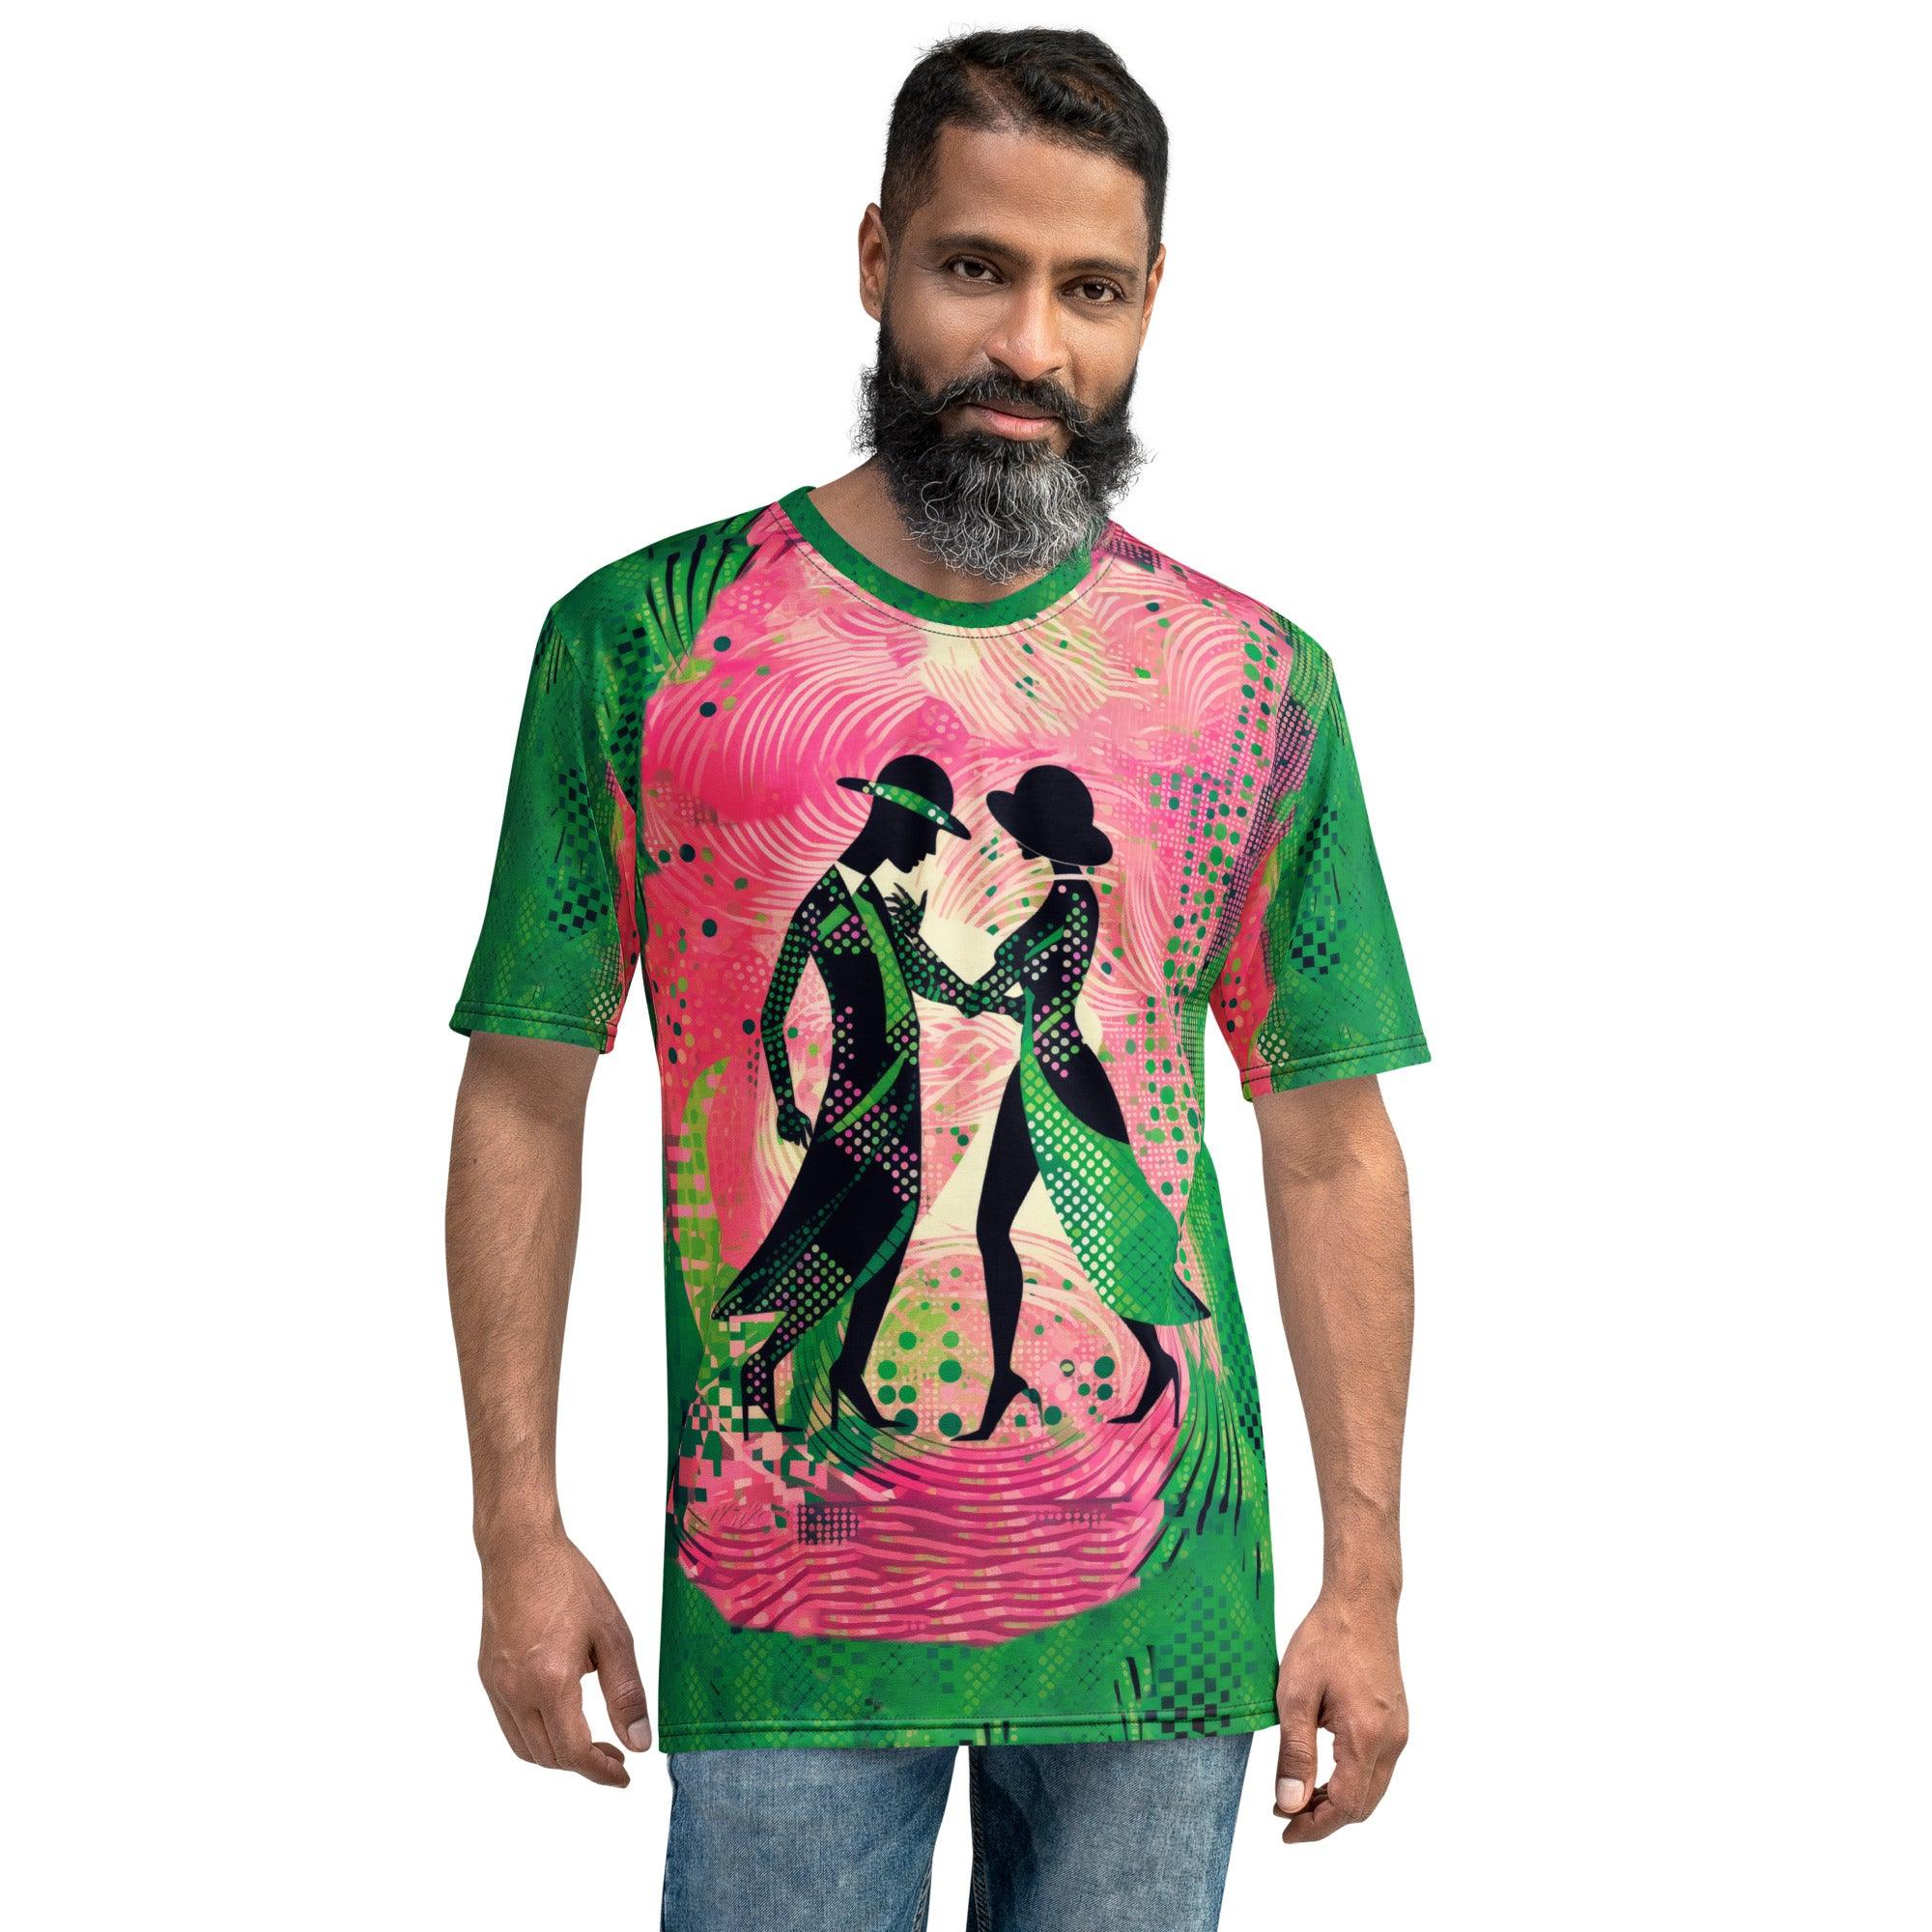 Graceful Women's Dance Flair Men's T-shirt - Beyond T-shirts